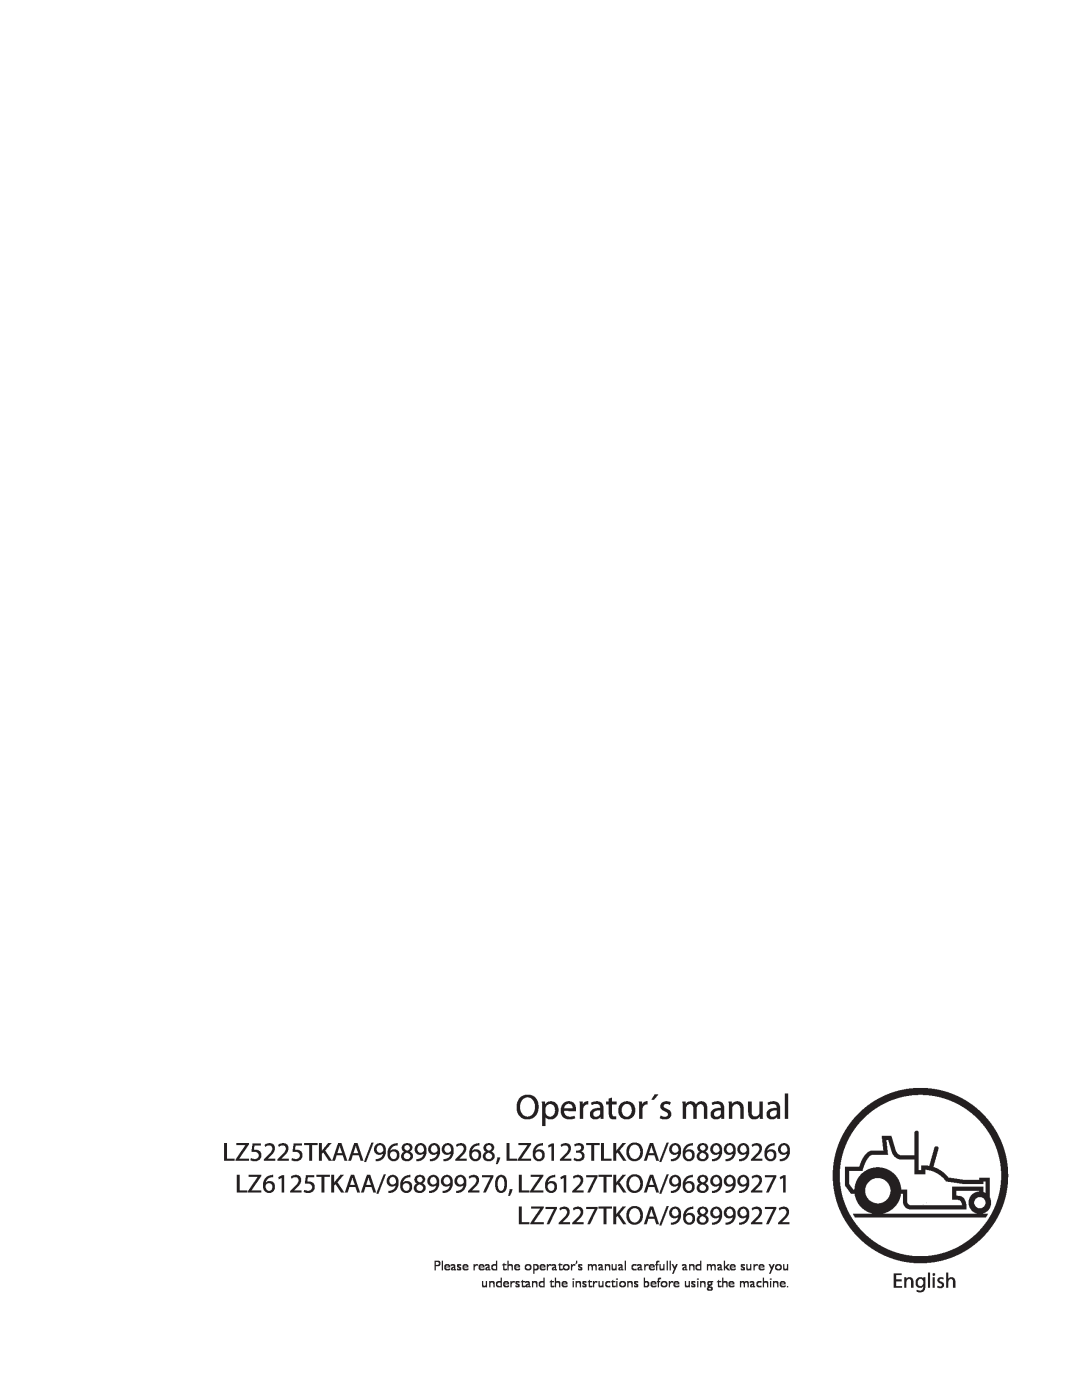 Husqvarna LZ6123TLKOA (968999269), LZ6125TKAA (968999270), LZ6127TKOA, LZ7227TKOA manual English, Operator´s manual 